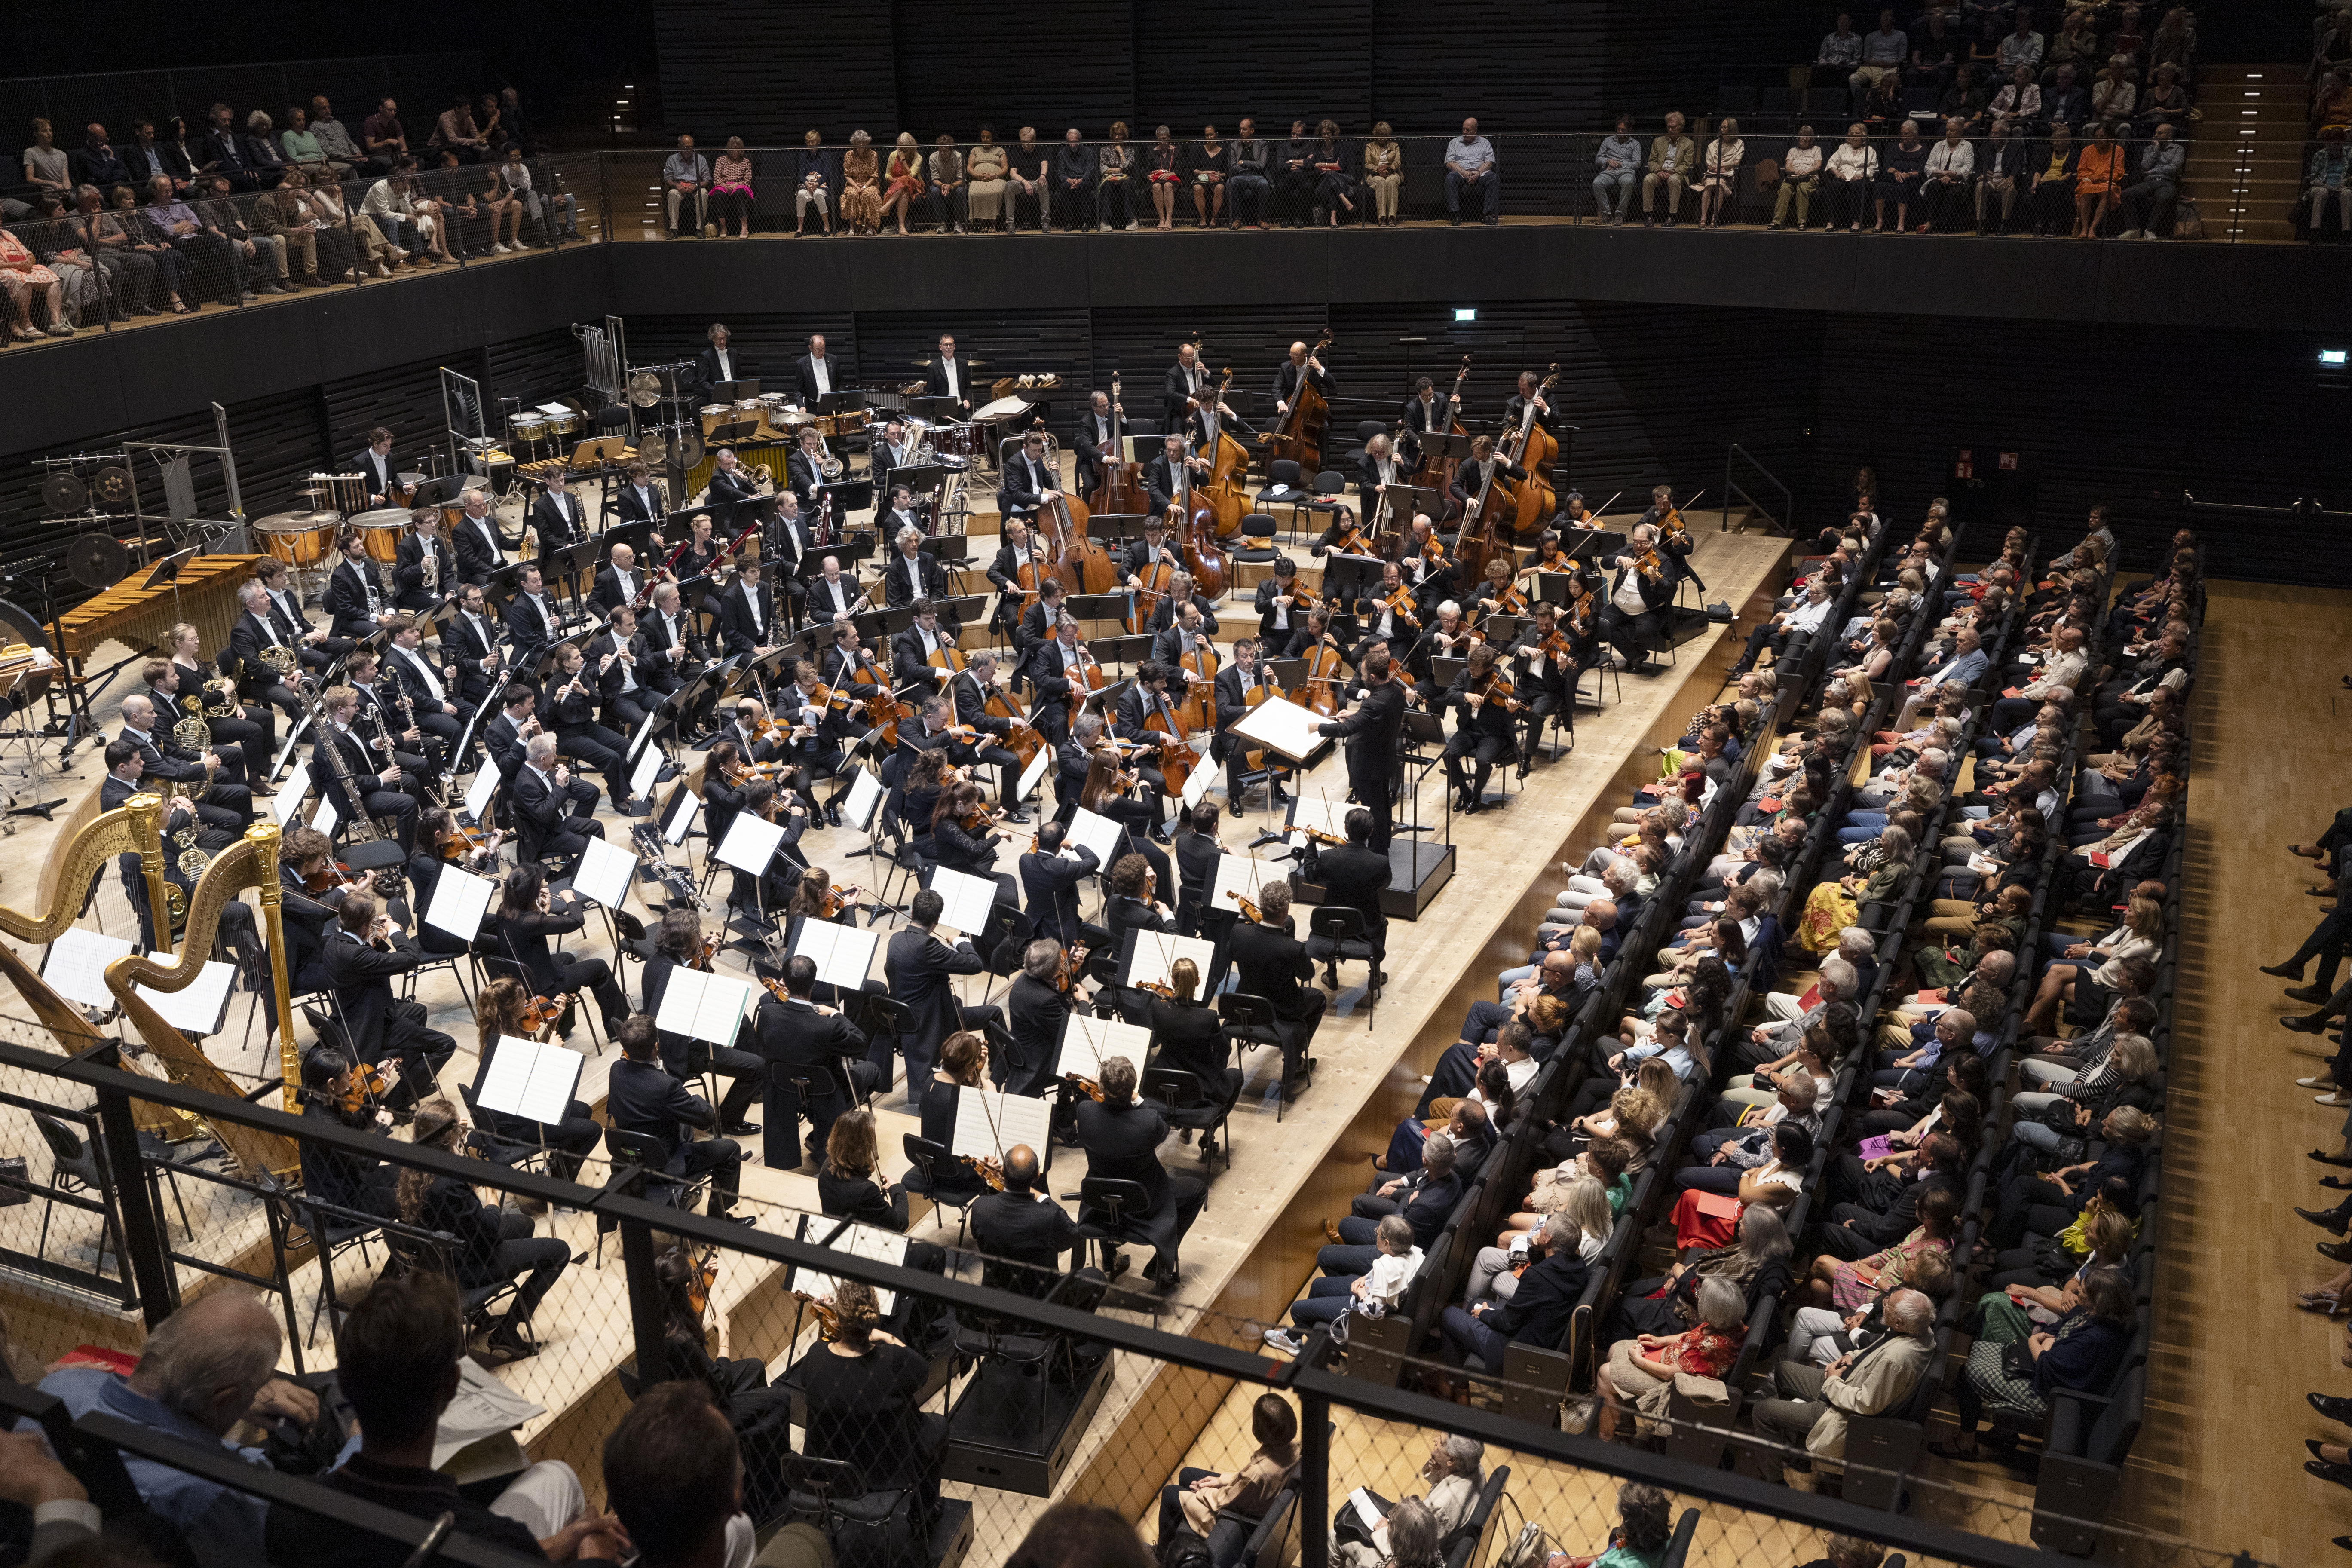 Orchester und Publikum im Saal von der Seite